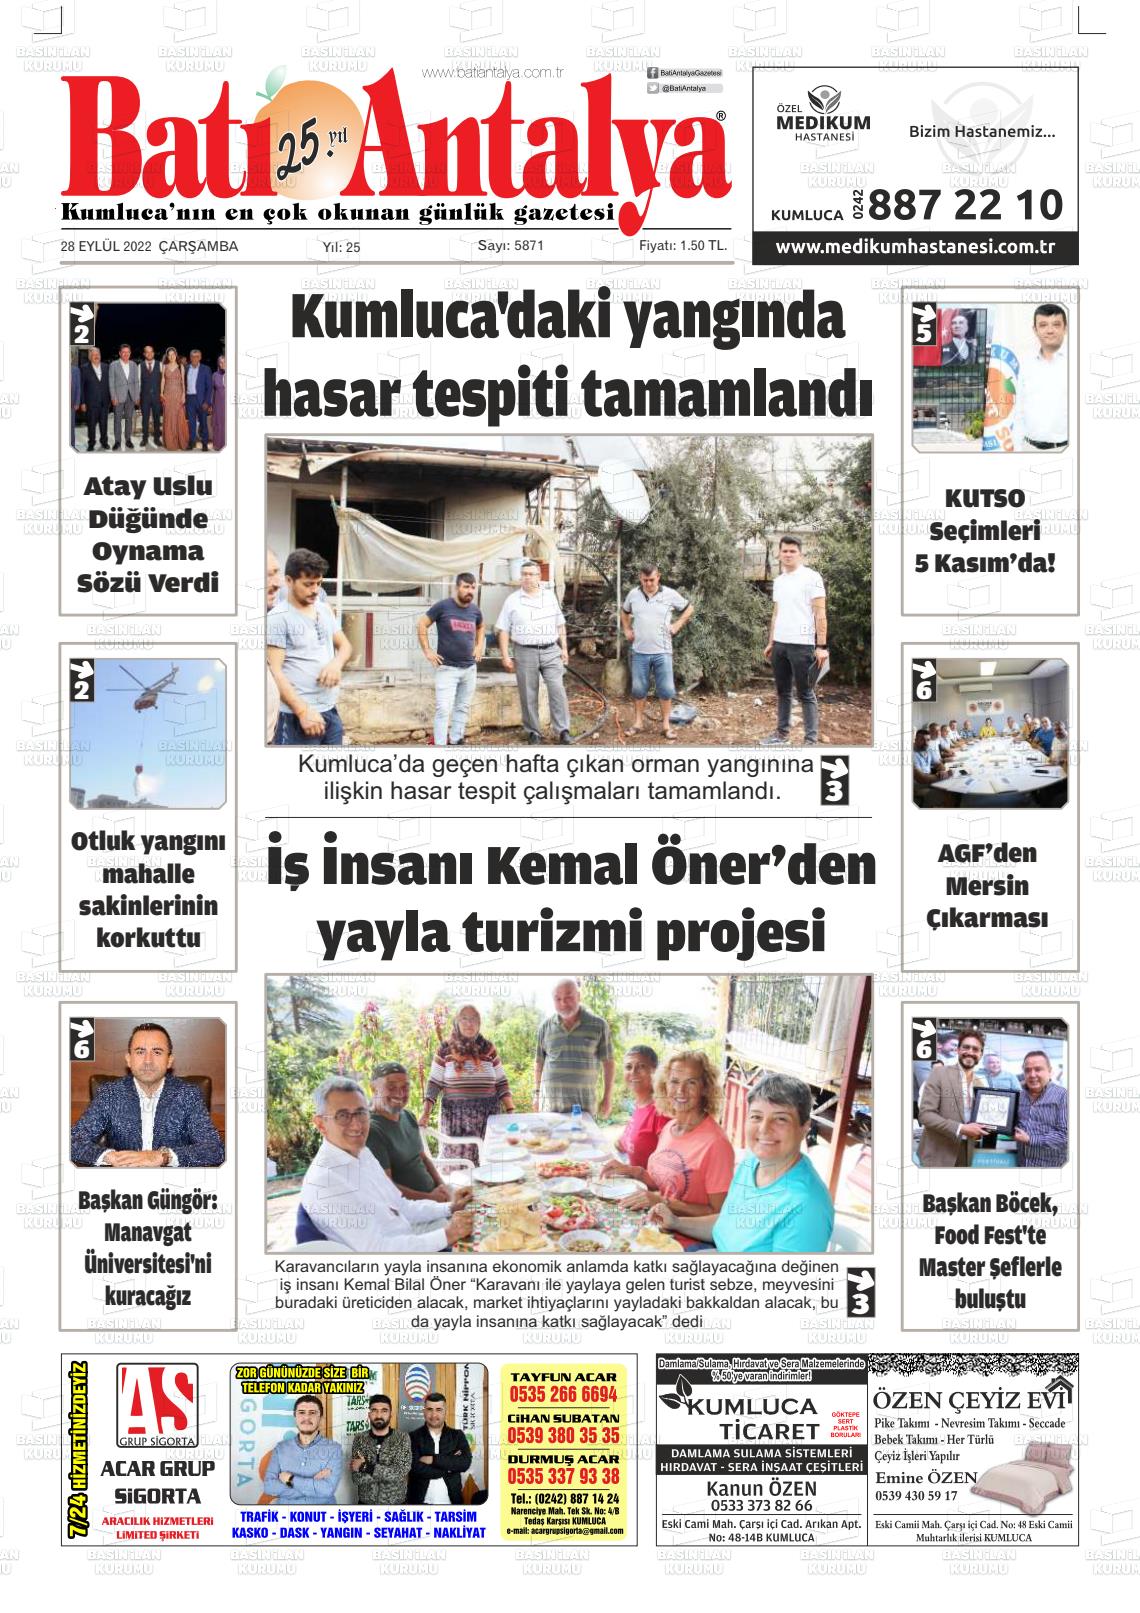 28 Eylül 2022 Batı Antalya Gazete Manşeti